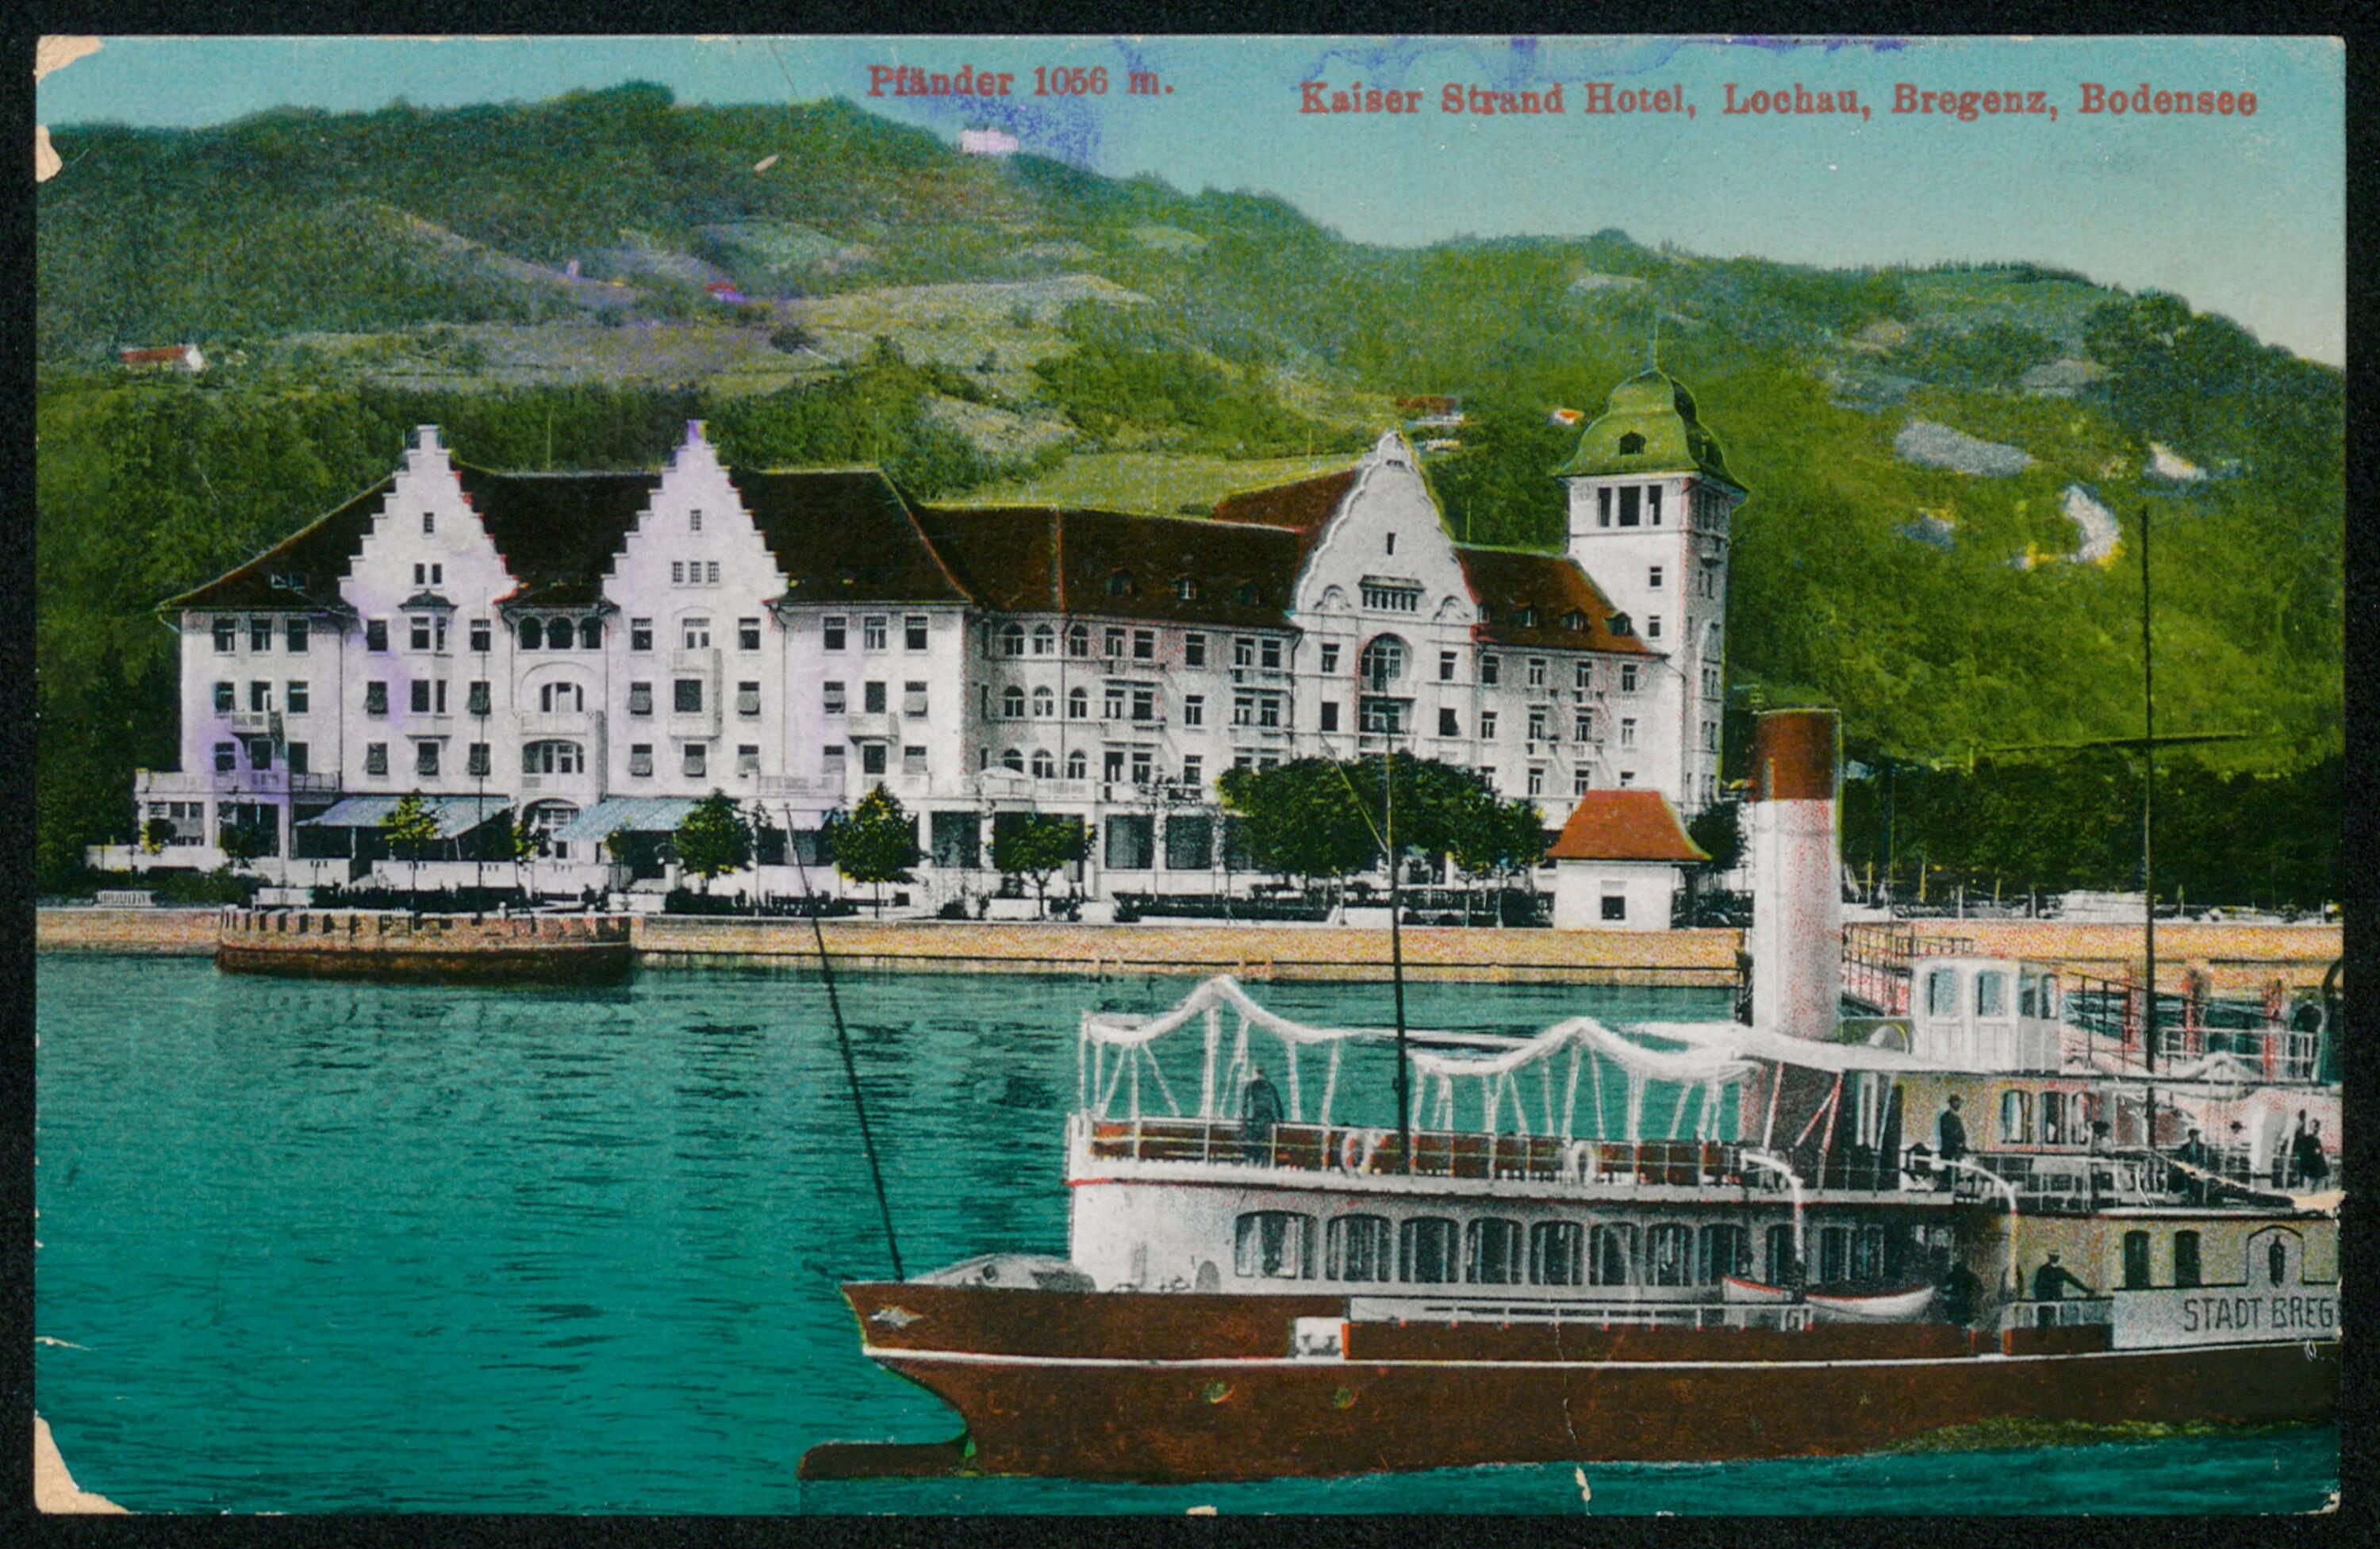 Kaiser Strand Hotel, Lochau, Bregenz, Bodensee></div>


    <hr>
    <div class=